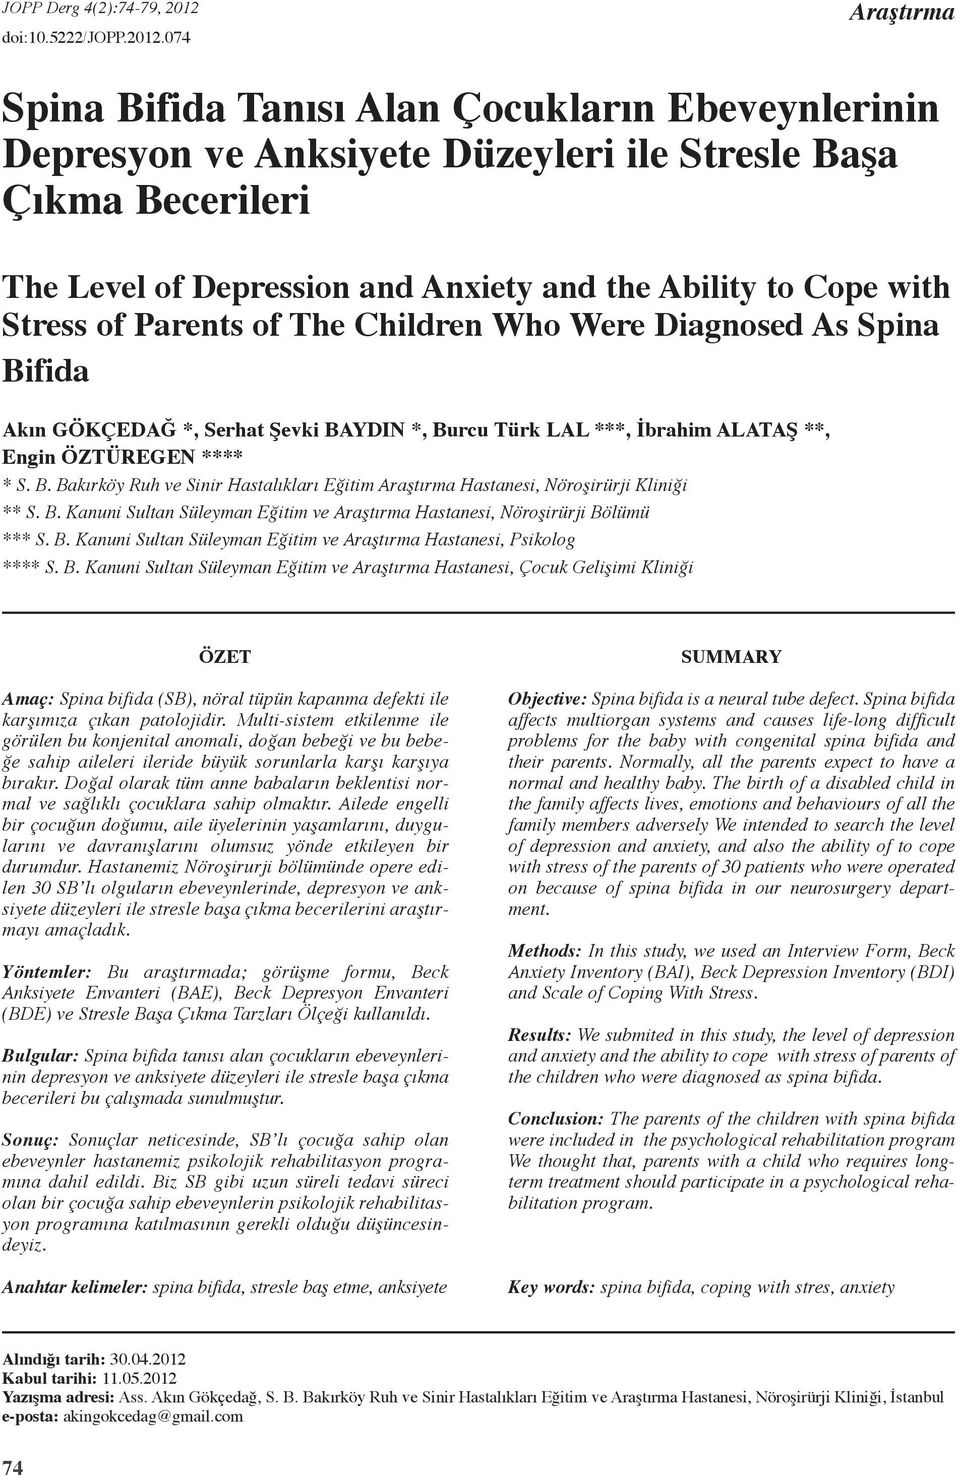 074 Araştırma Spina Bifida Tanısı Alan Çocukların Ebeveynlerinin Depresyon ve Anksiyete Düzeyleri ile Stresle Başa Çıkma Becerileri The Level of Depression and Anxiety and the Ability to Cope with